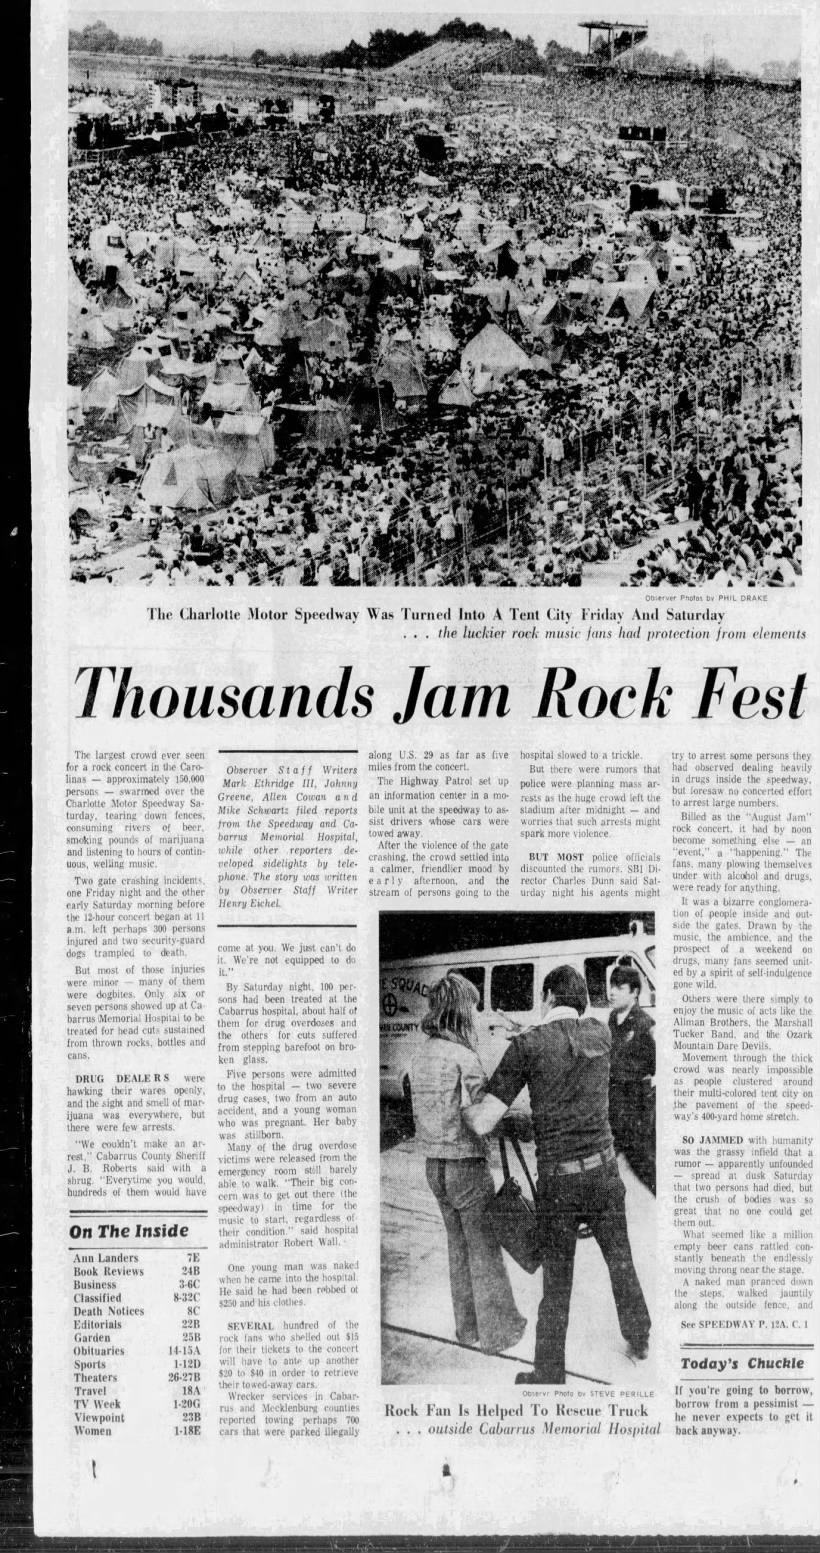 Thousands Jam Rock Fest (Part 1)